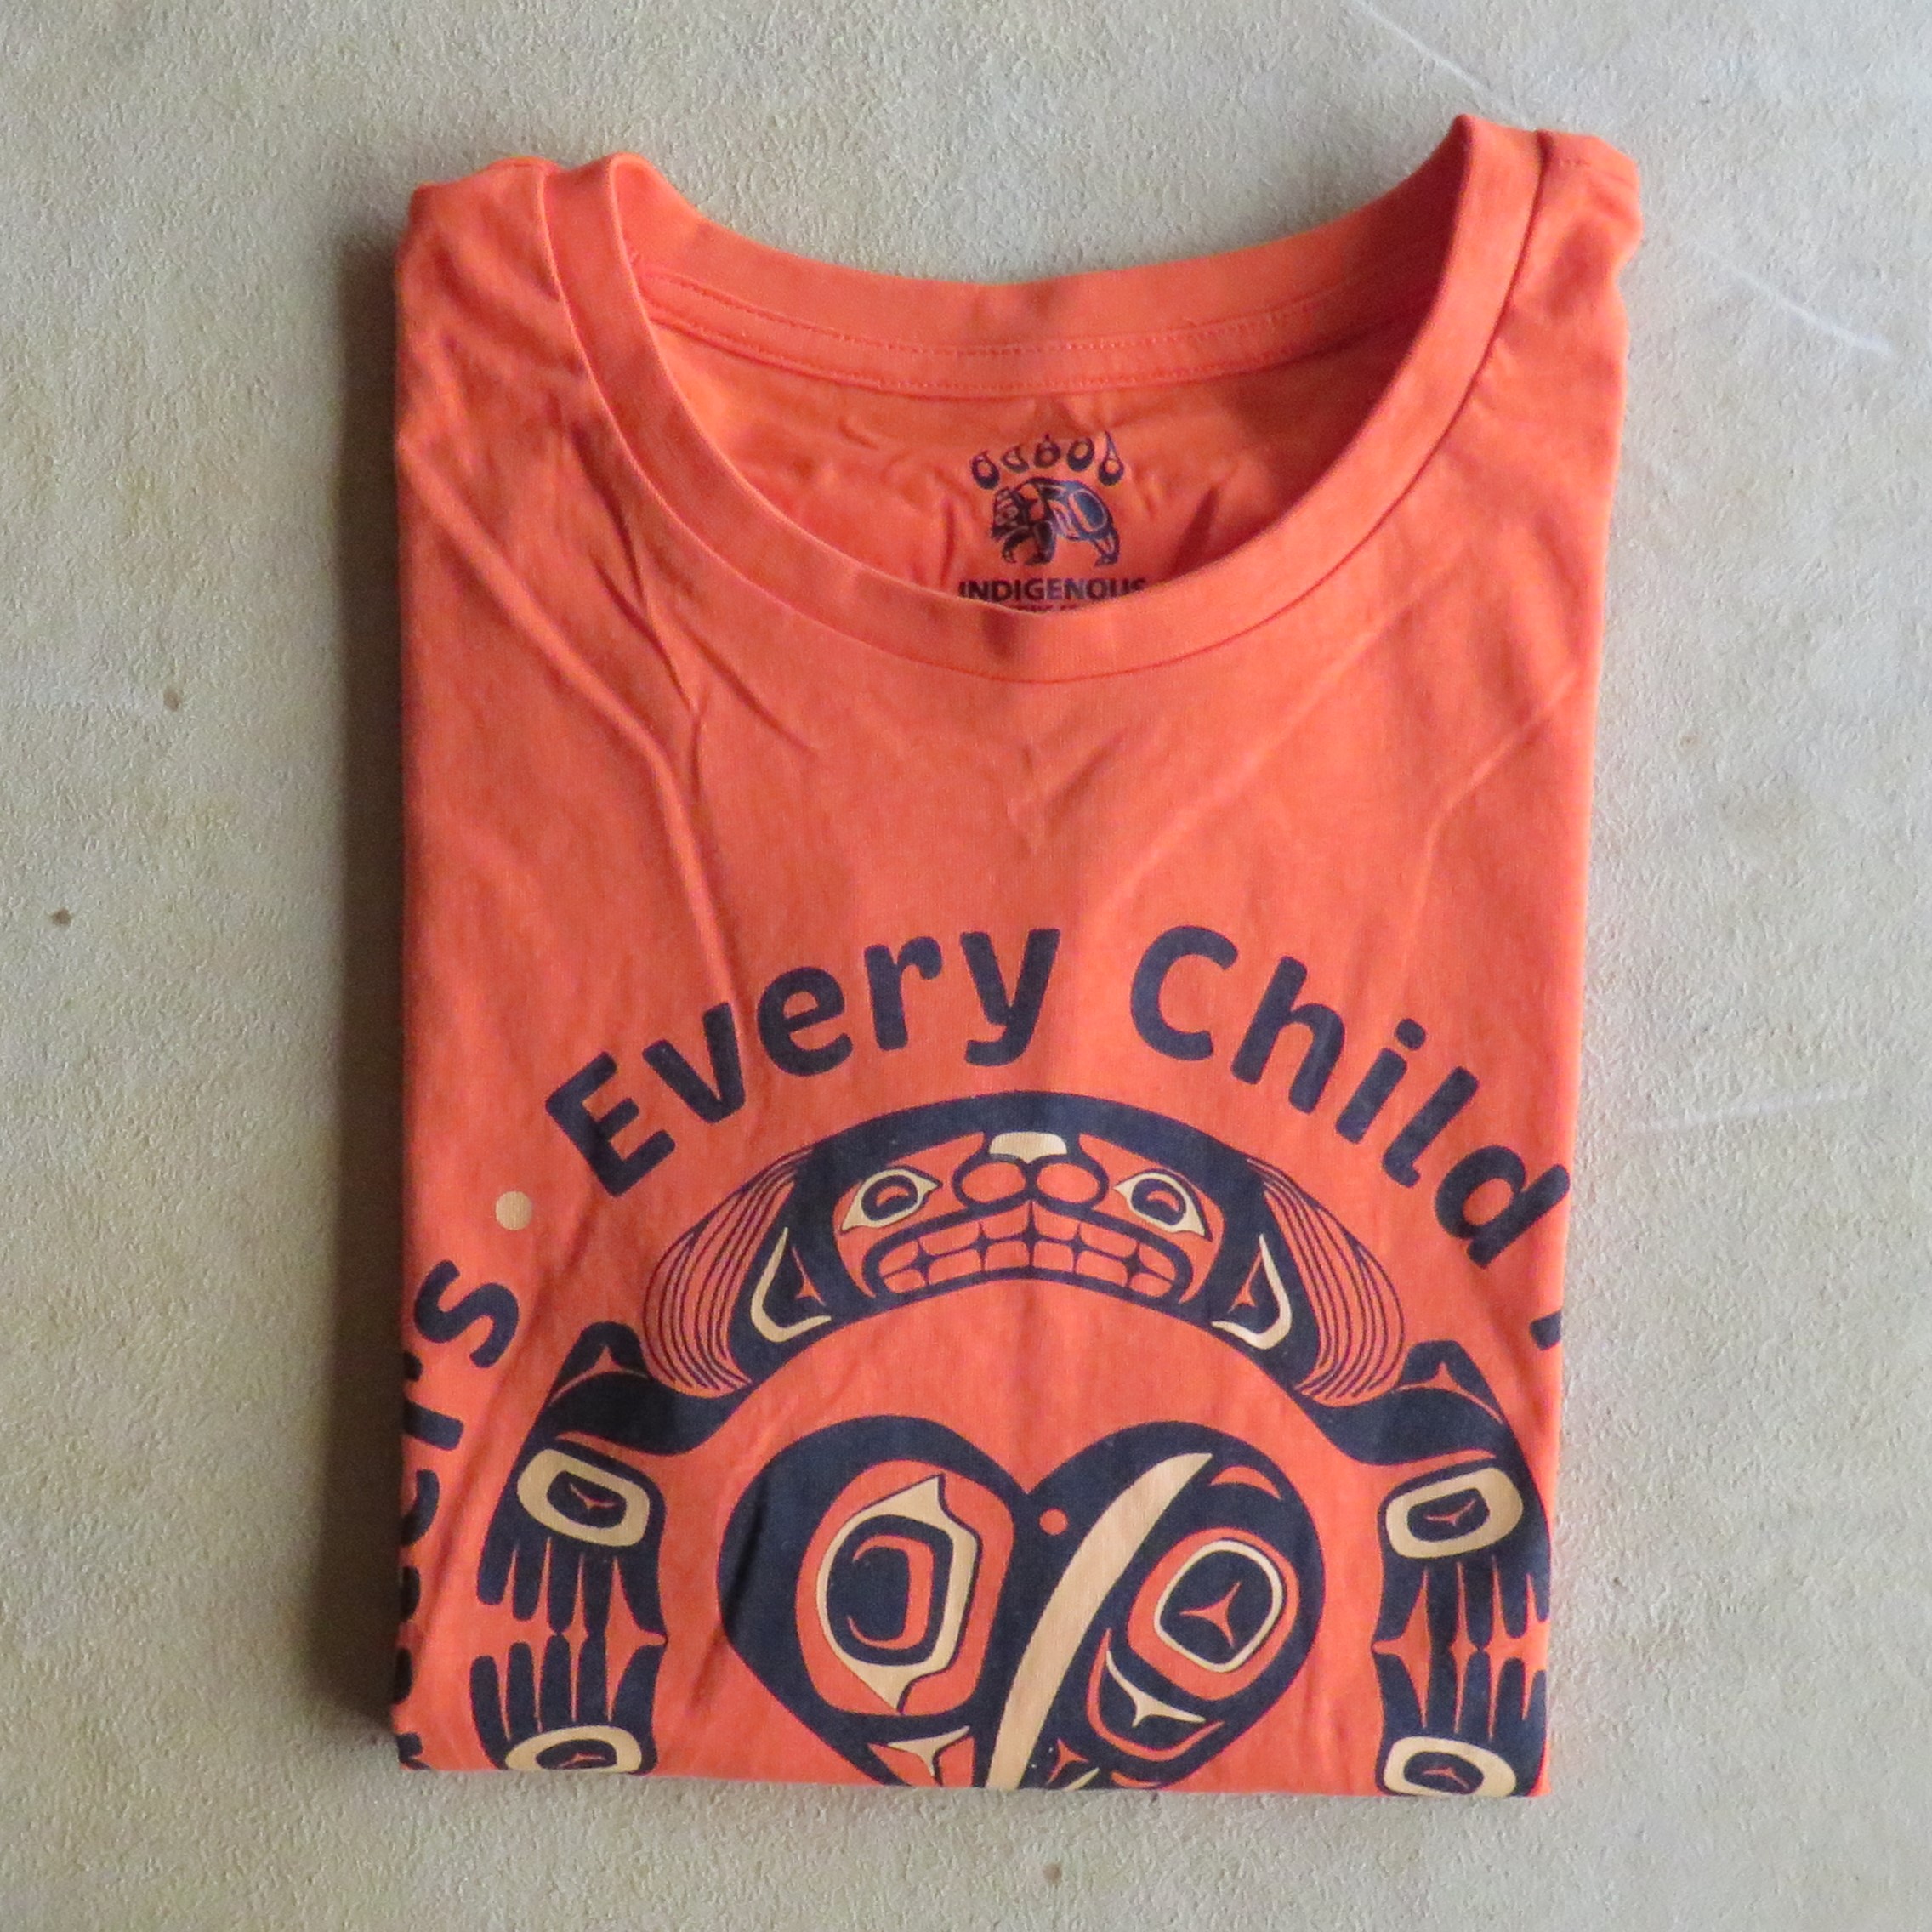 Every child matters T-shirt oranje